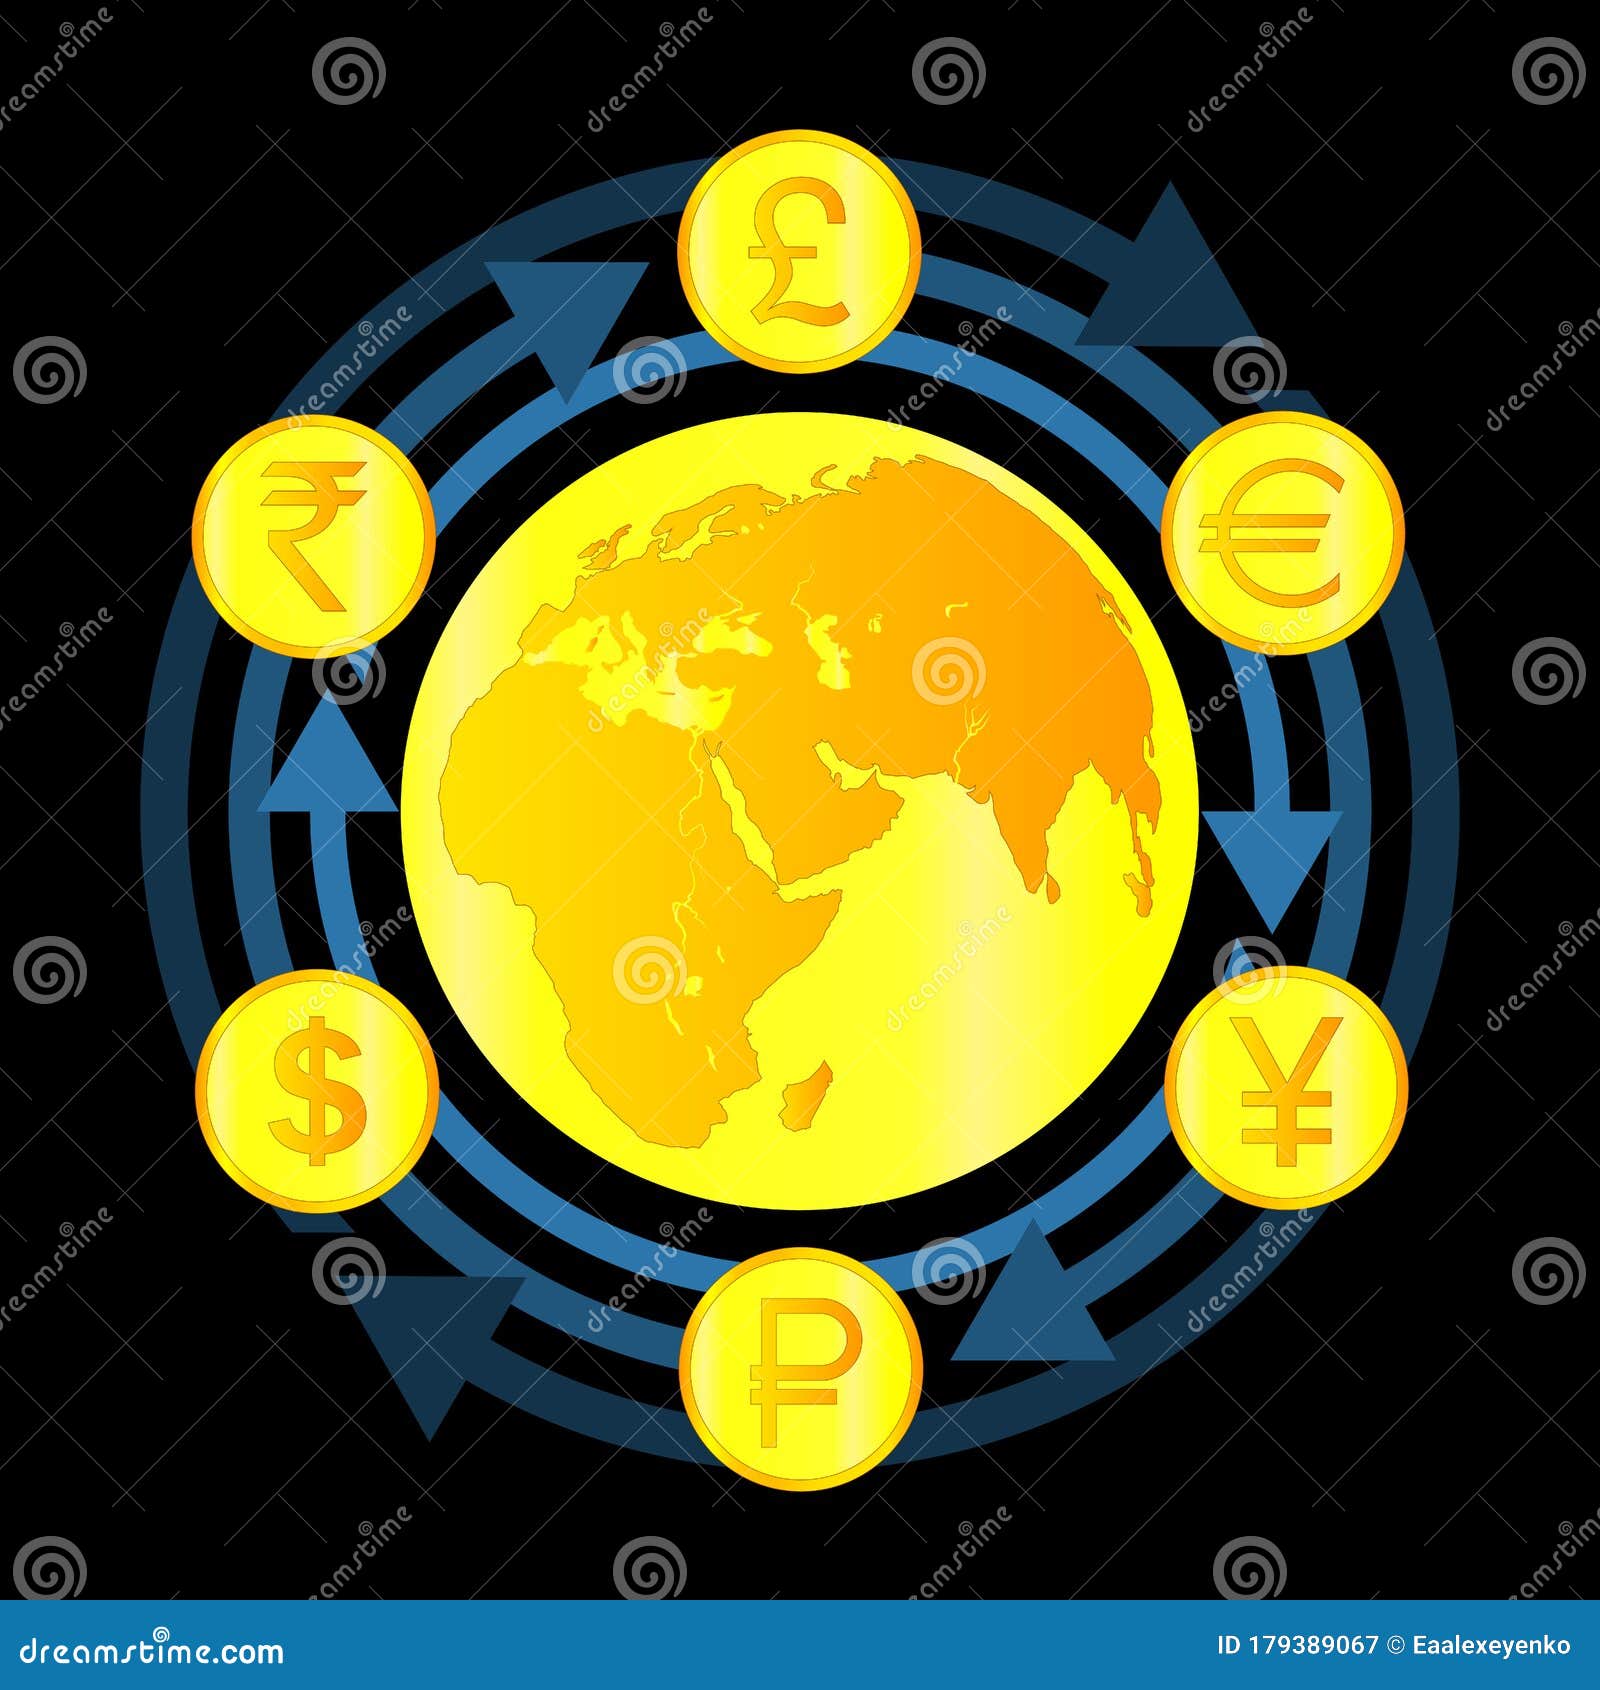 Мир банков обмен валюты москва 24 курсы обмена валют